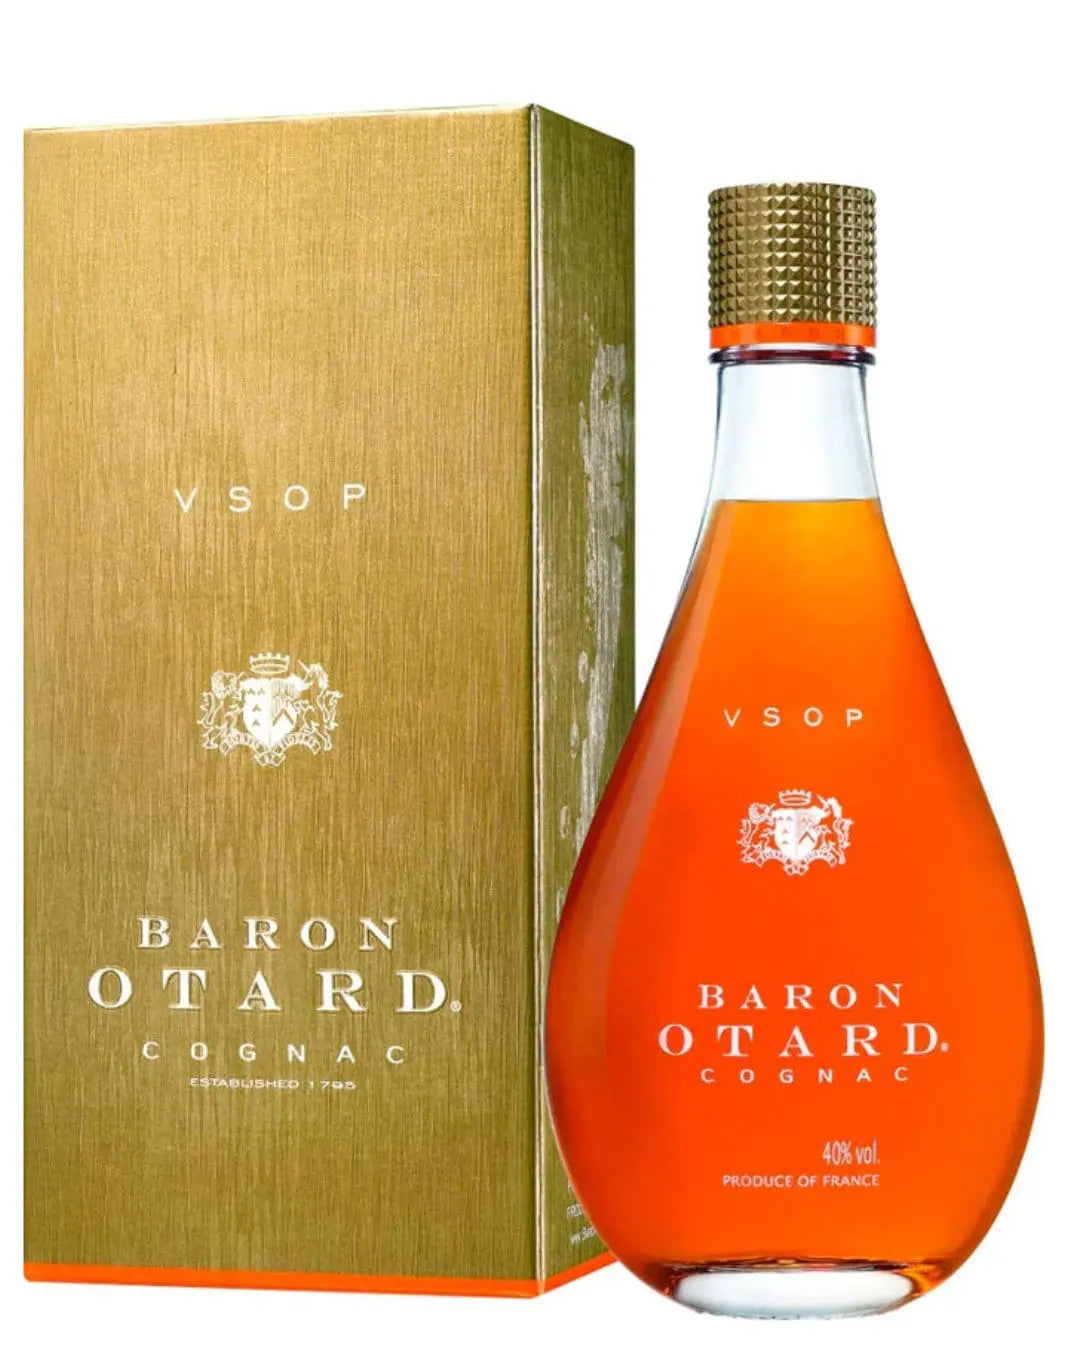 Baron Otard VSOP Cognac, 1 L Cognac & Brandy